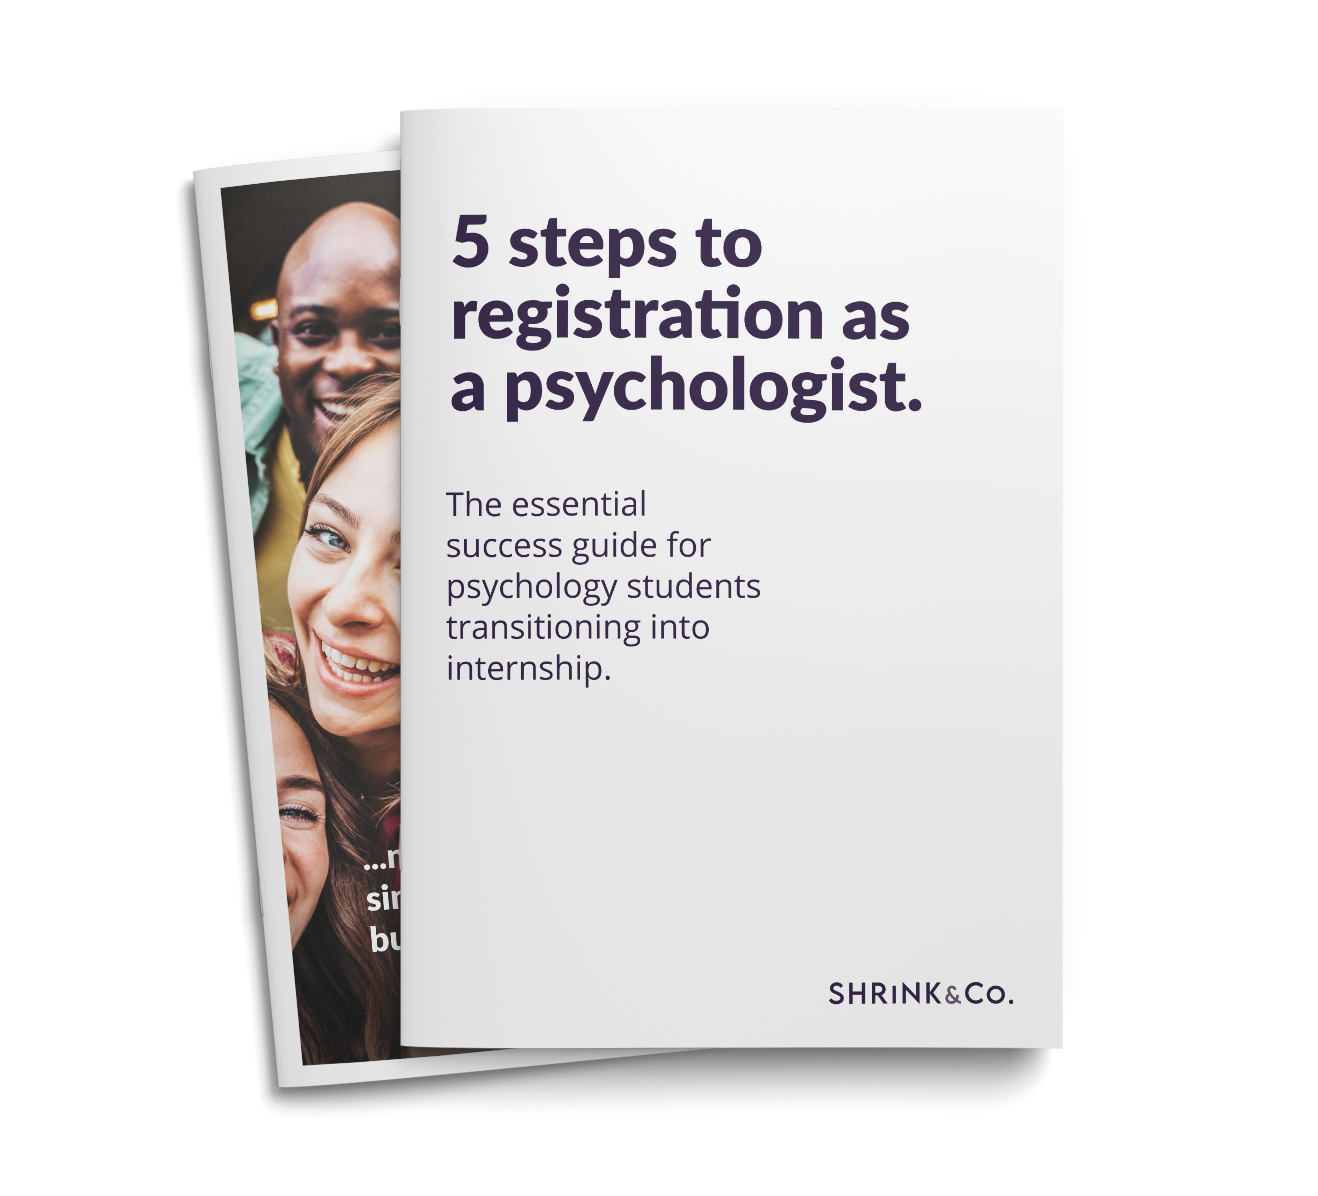 5 Steps to registration as a psychologist booklet | Shrink & Co. | Support Coordinators